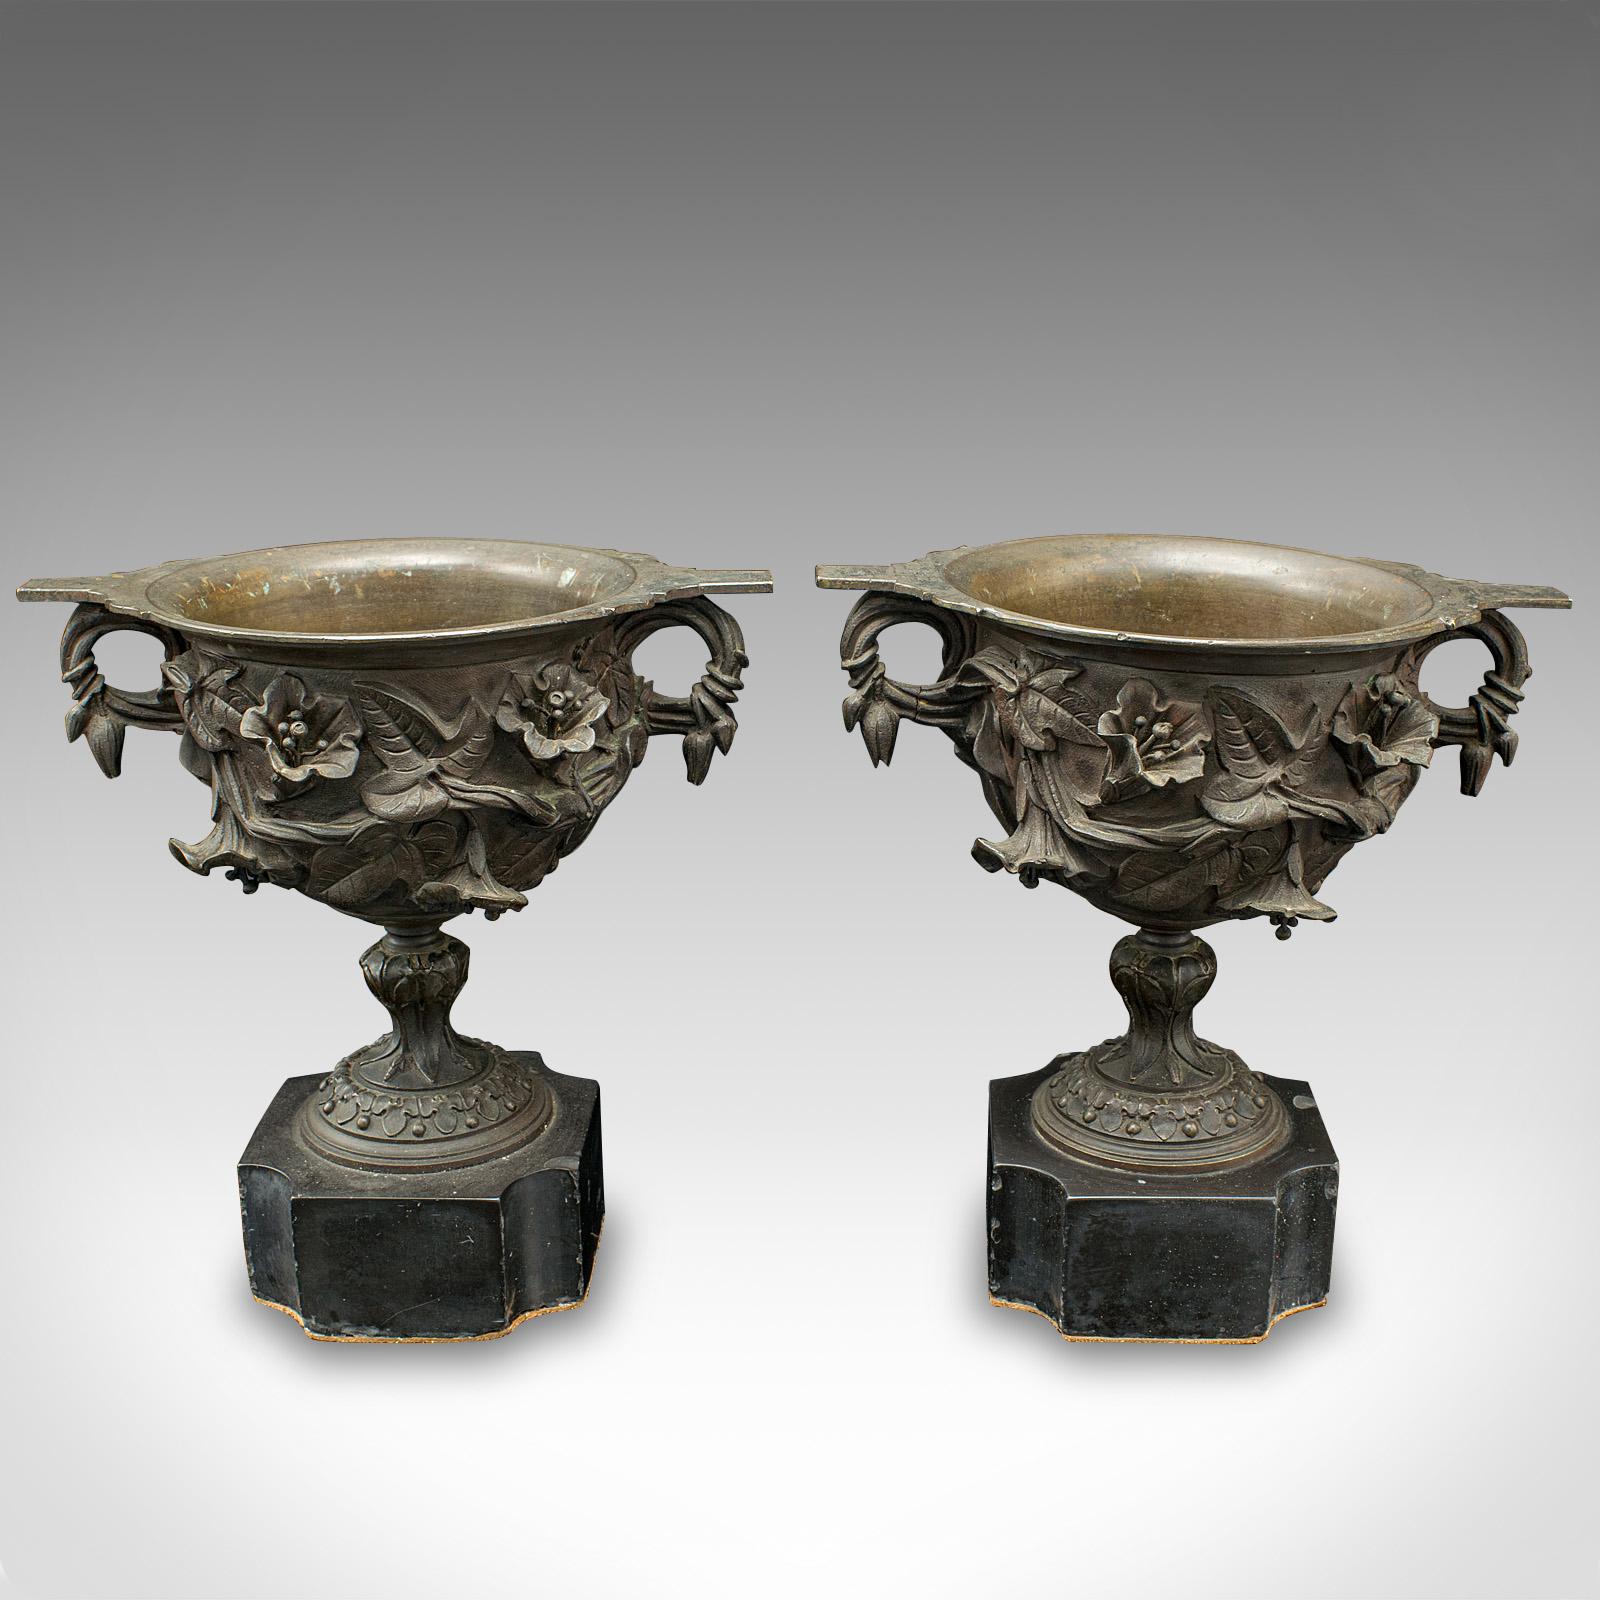 Dies ist ein Paar von antiken Trinkbechern. Ein italienischer Zierpokal aus Bronze und Marmor im Grand-Tour-Stil aus der frühen viktorianischen Zeit um 1850.

Auffallend präsentierte Tassen, mit herrlichem Reliefdekor
Zeigt eine wünschenswerte